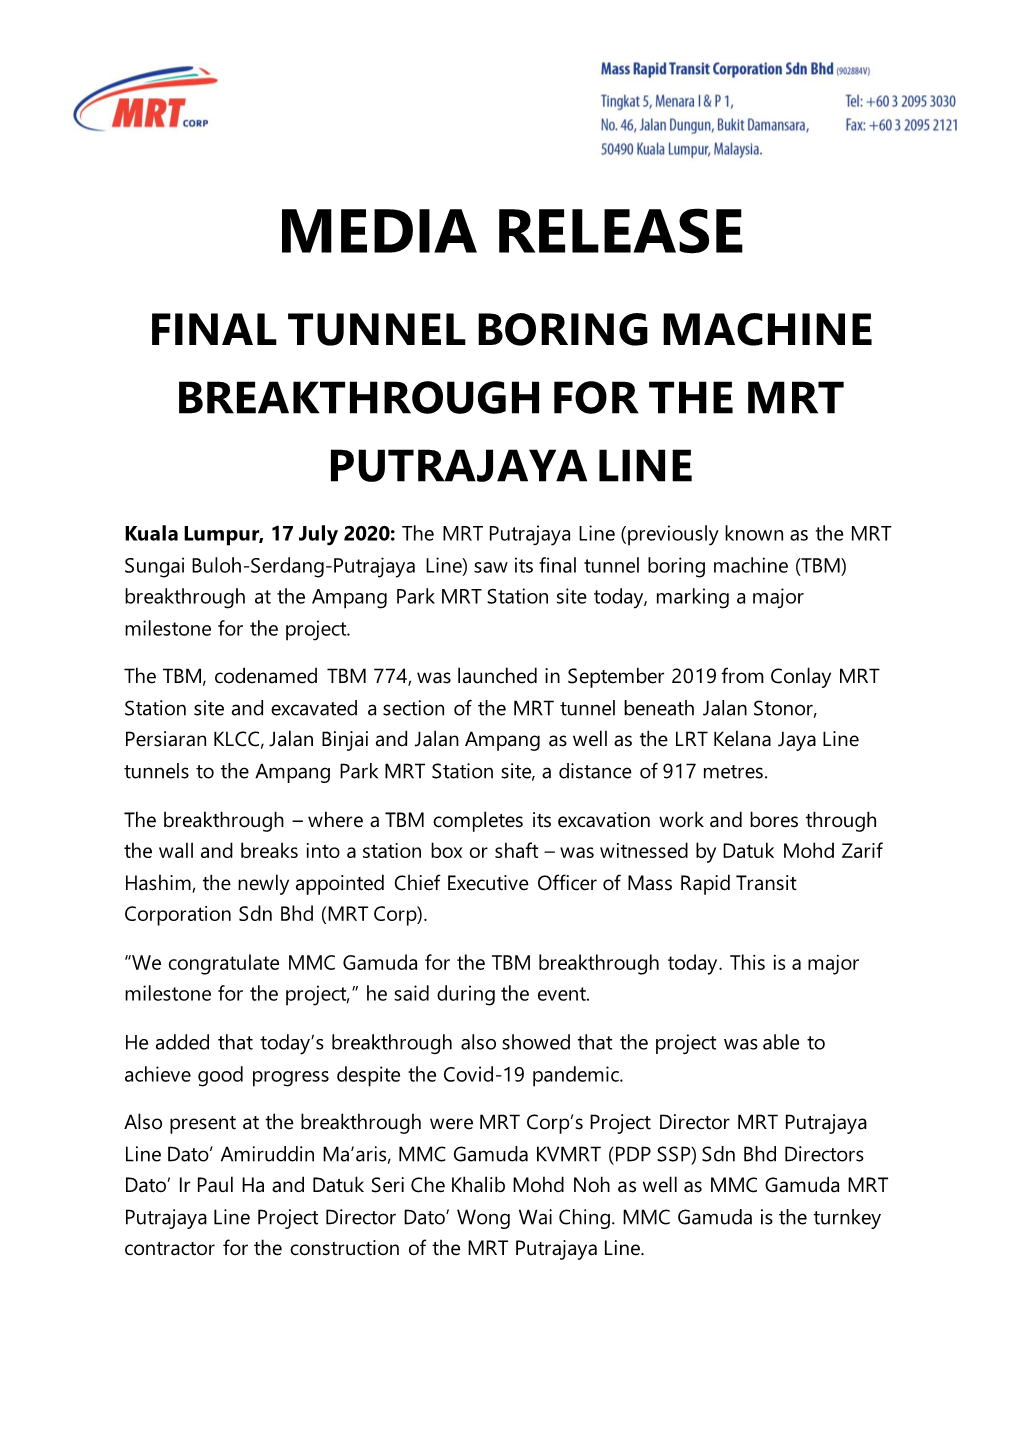 Media Release Final Tunnel Boring Machine Breakthrough for the Mrt Putrajaya Line